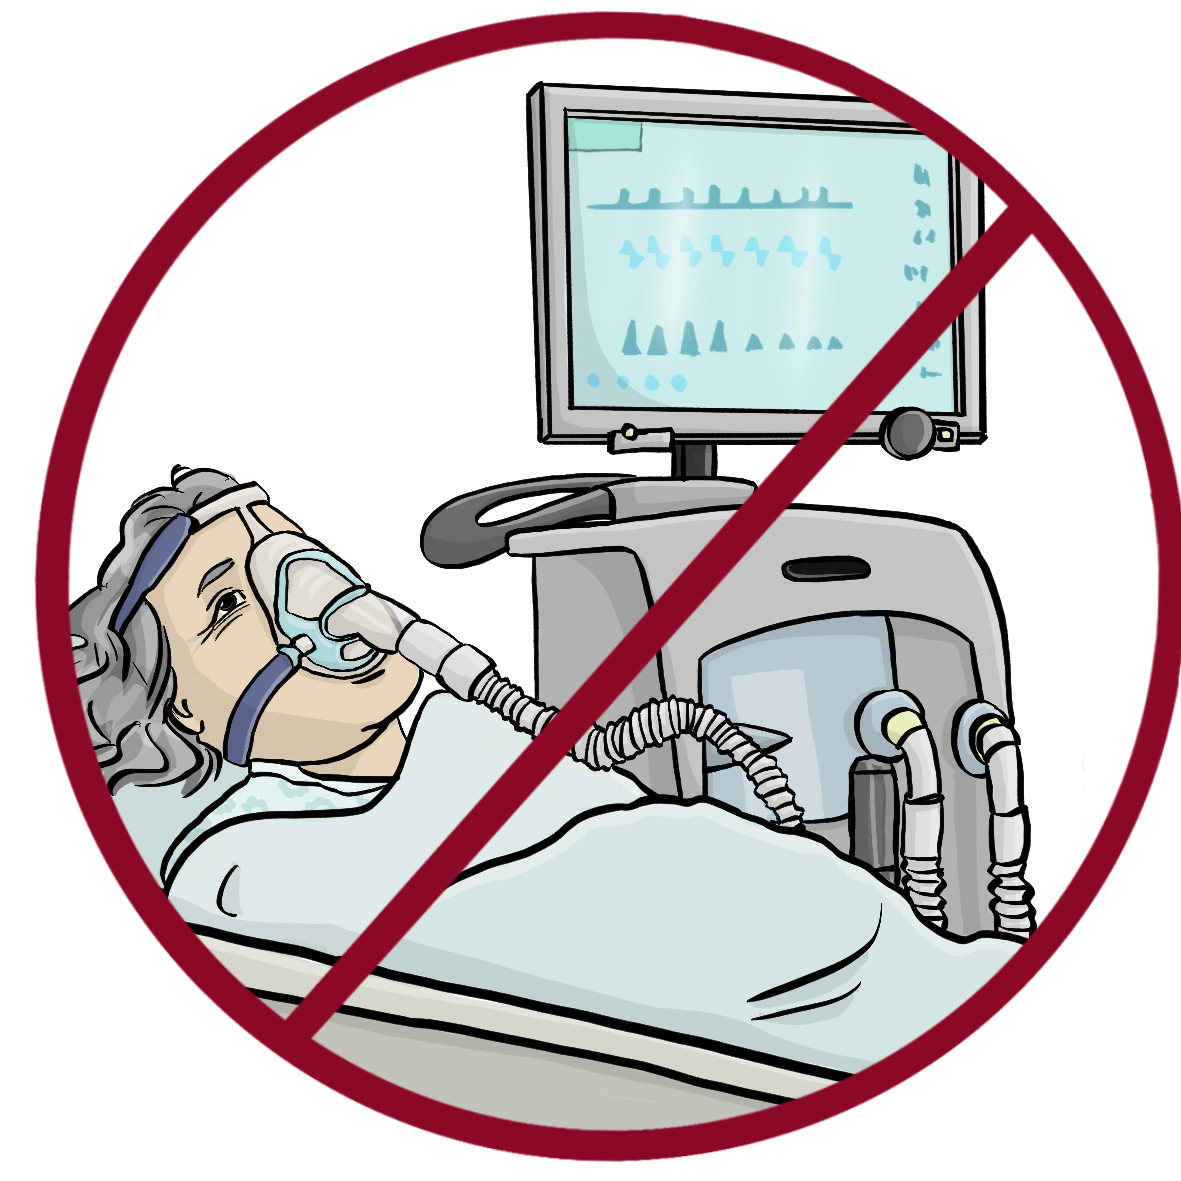 Eine ältere Frau mit Sauerstoffmaske liegt in einem Krankenhausbett. Neben dem Bett steht ein Beatmungsgerät. Das Bild ist rot durchgestrichen. 